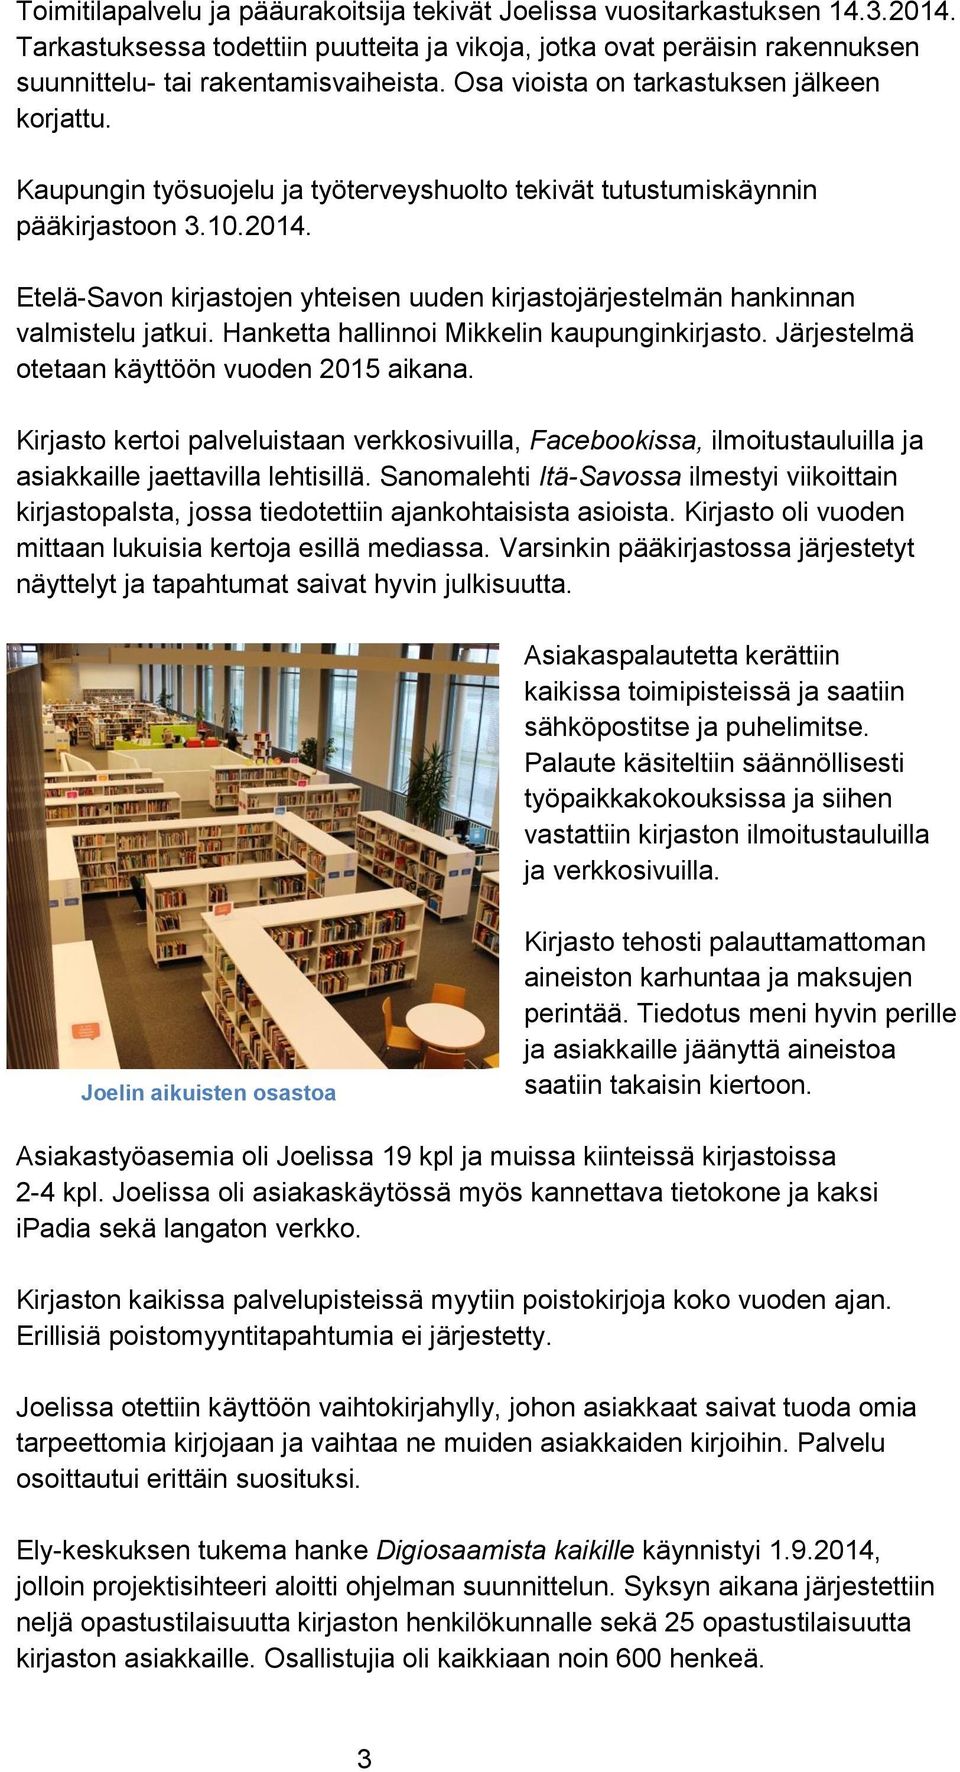 Etelä-Savon kirjastojen yhteisen uuden kirjastojärjestelmän hankinnan valmistelu jatkui. Hanketta hallinnoi Mikkelin kaupunginkirjasto. Järjestelmä otetaan käyttöön vuoden 2015 aikana.